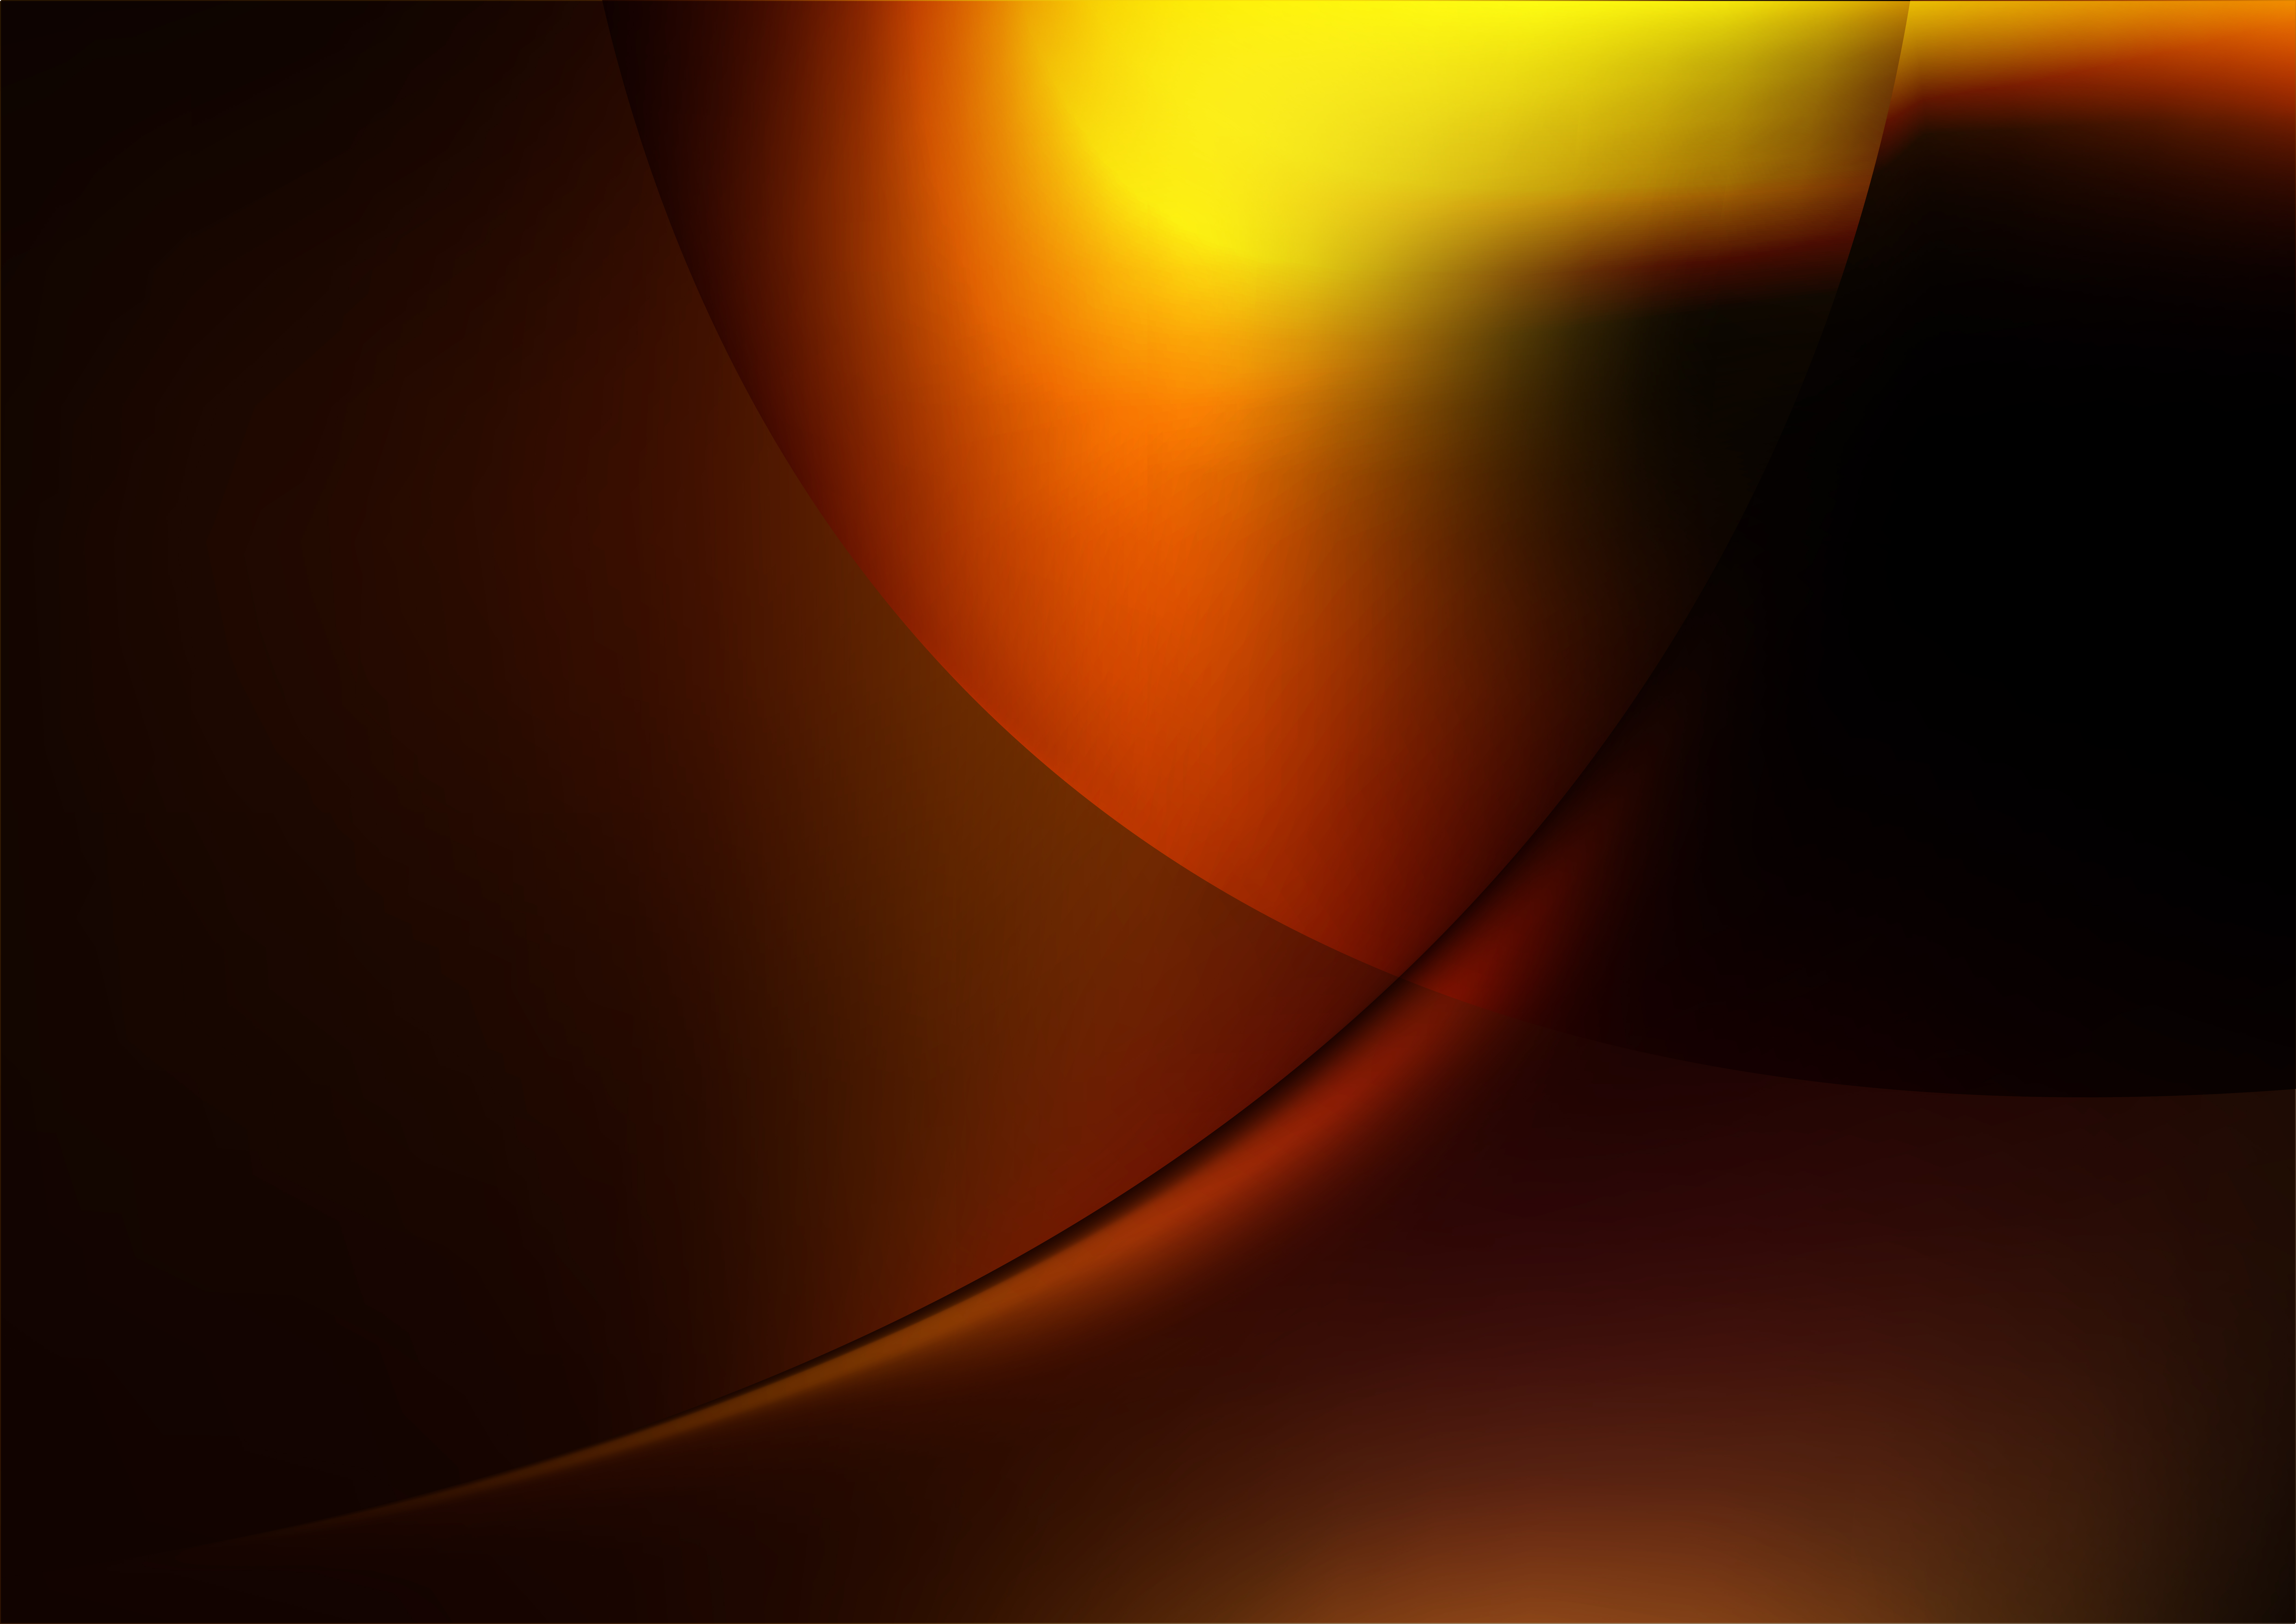 Một bức tranh đẹp đến mê hồn với nền đen đỏ vàng gradient vector miễn phí, đem lại cho bạn sự tinh tế, độc đáo và sáng tạo. Bạn sẽ ngỡ ngàng với sự phối hợp màu sắc chuyên nghiệp này, với một giao diện hiện đại và thu hút sự chú ý của khách hàng.